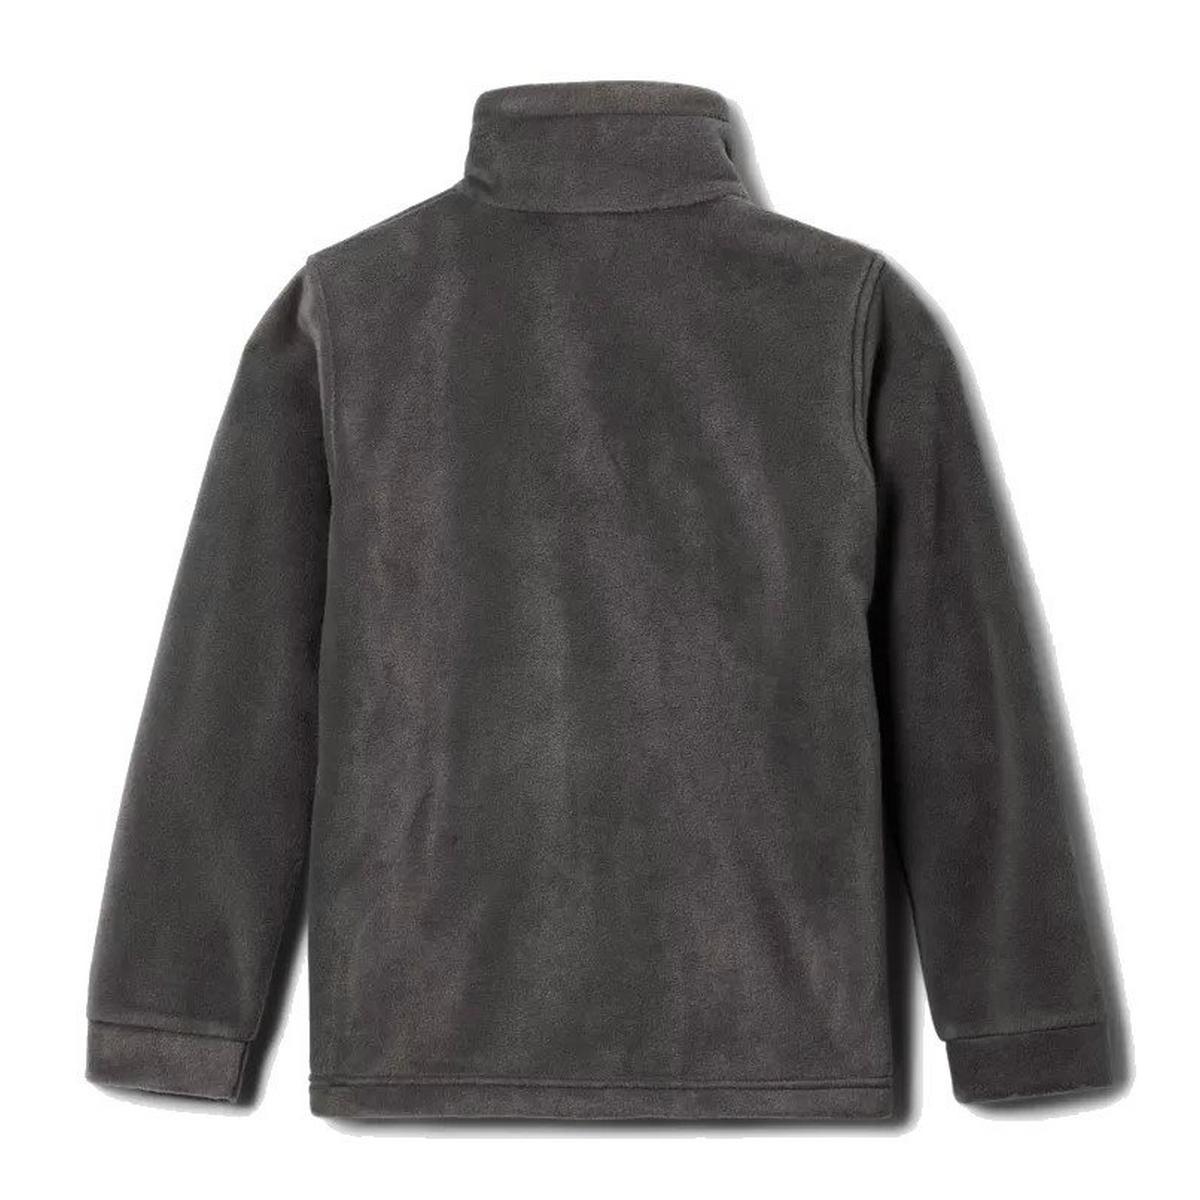 Columbia Kids' Steens Mountain II Fleece Jacket - Black / Grey